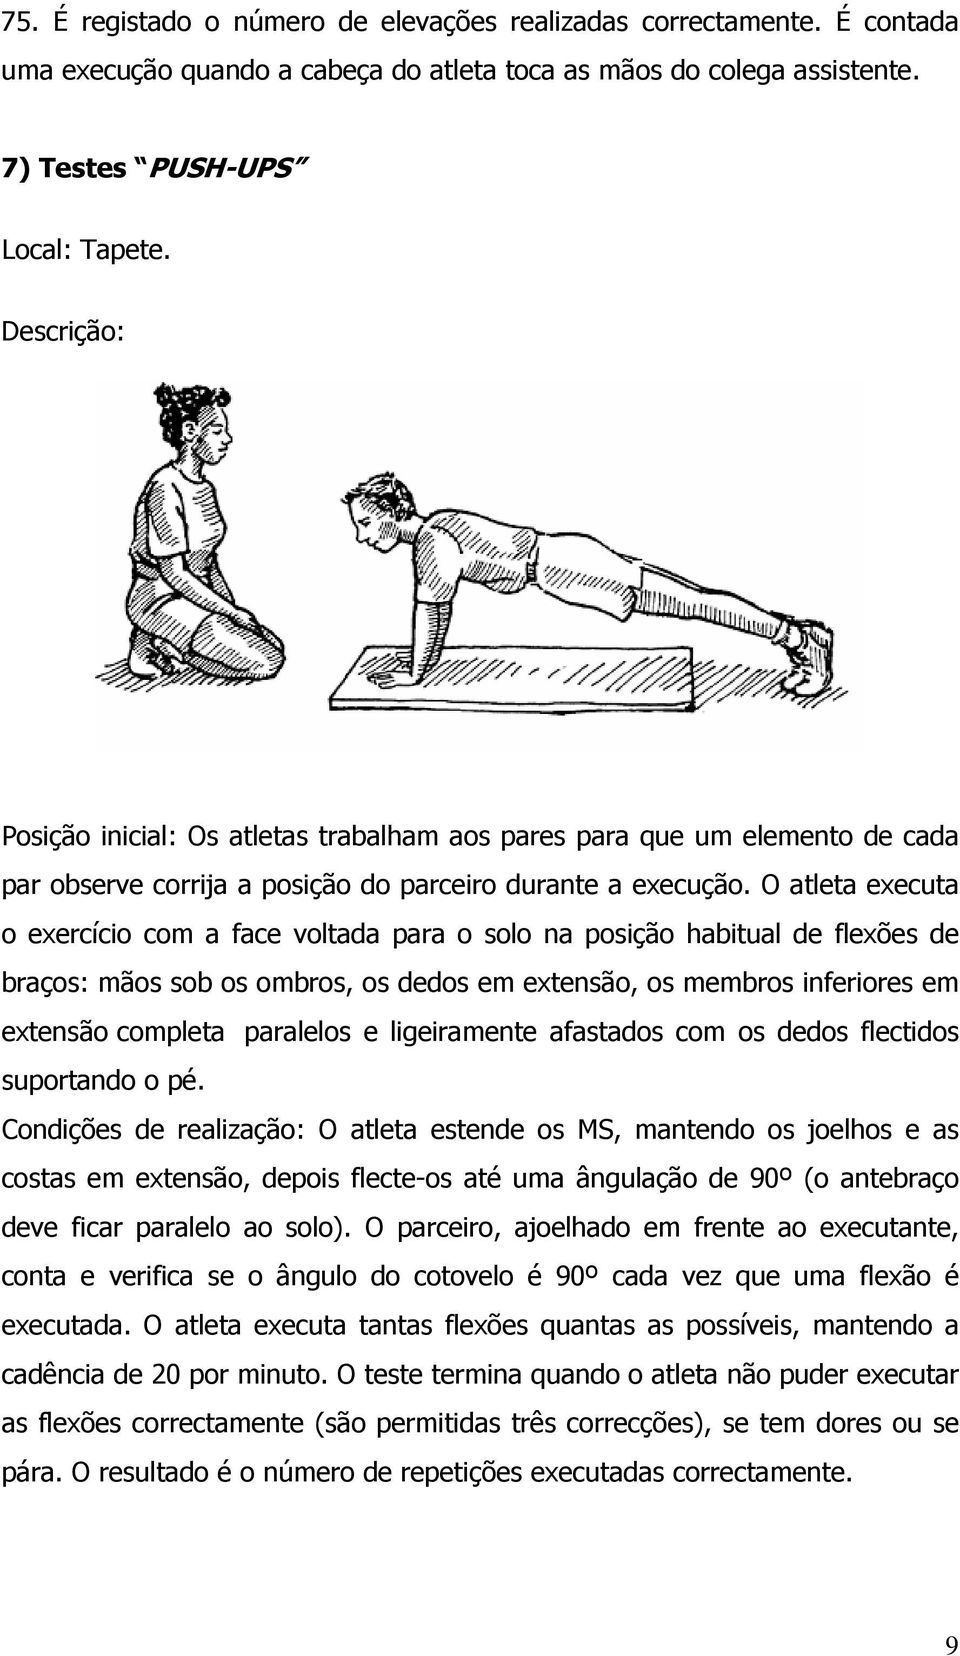 O atleta executa o exercício com a face voltada para o solo na posição habitual de flexões de braços: mãos sob os ombros, os dedos em extensão, os membros inferiores em extensão completa paralelos e